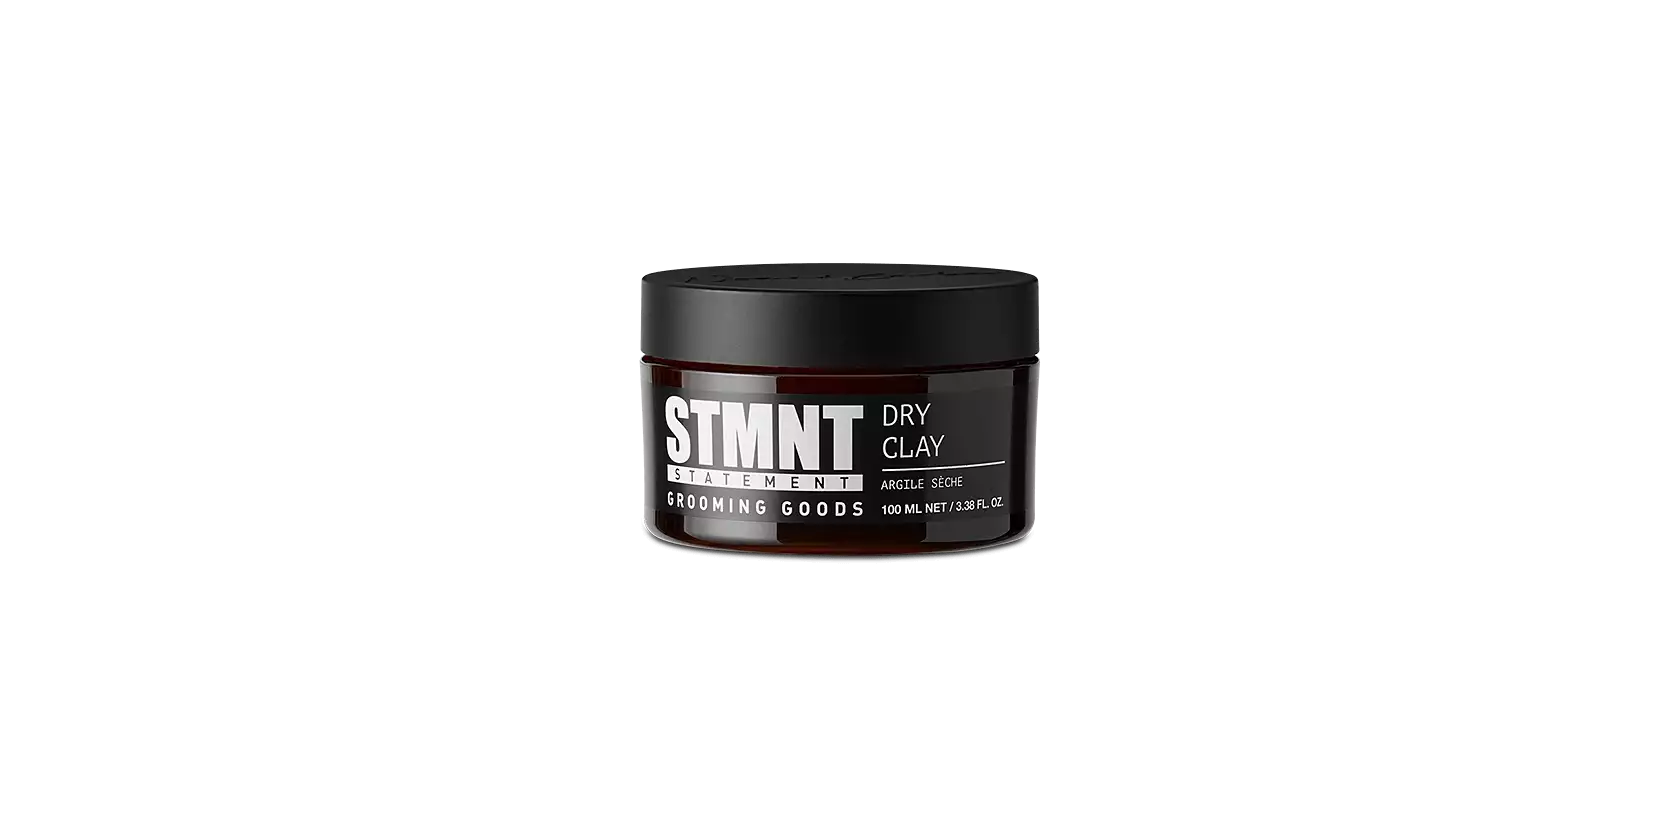 STMNT Grooming Goods Dry Clay 3.38oz